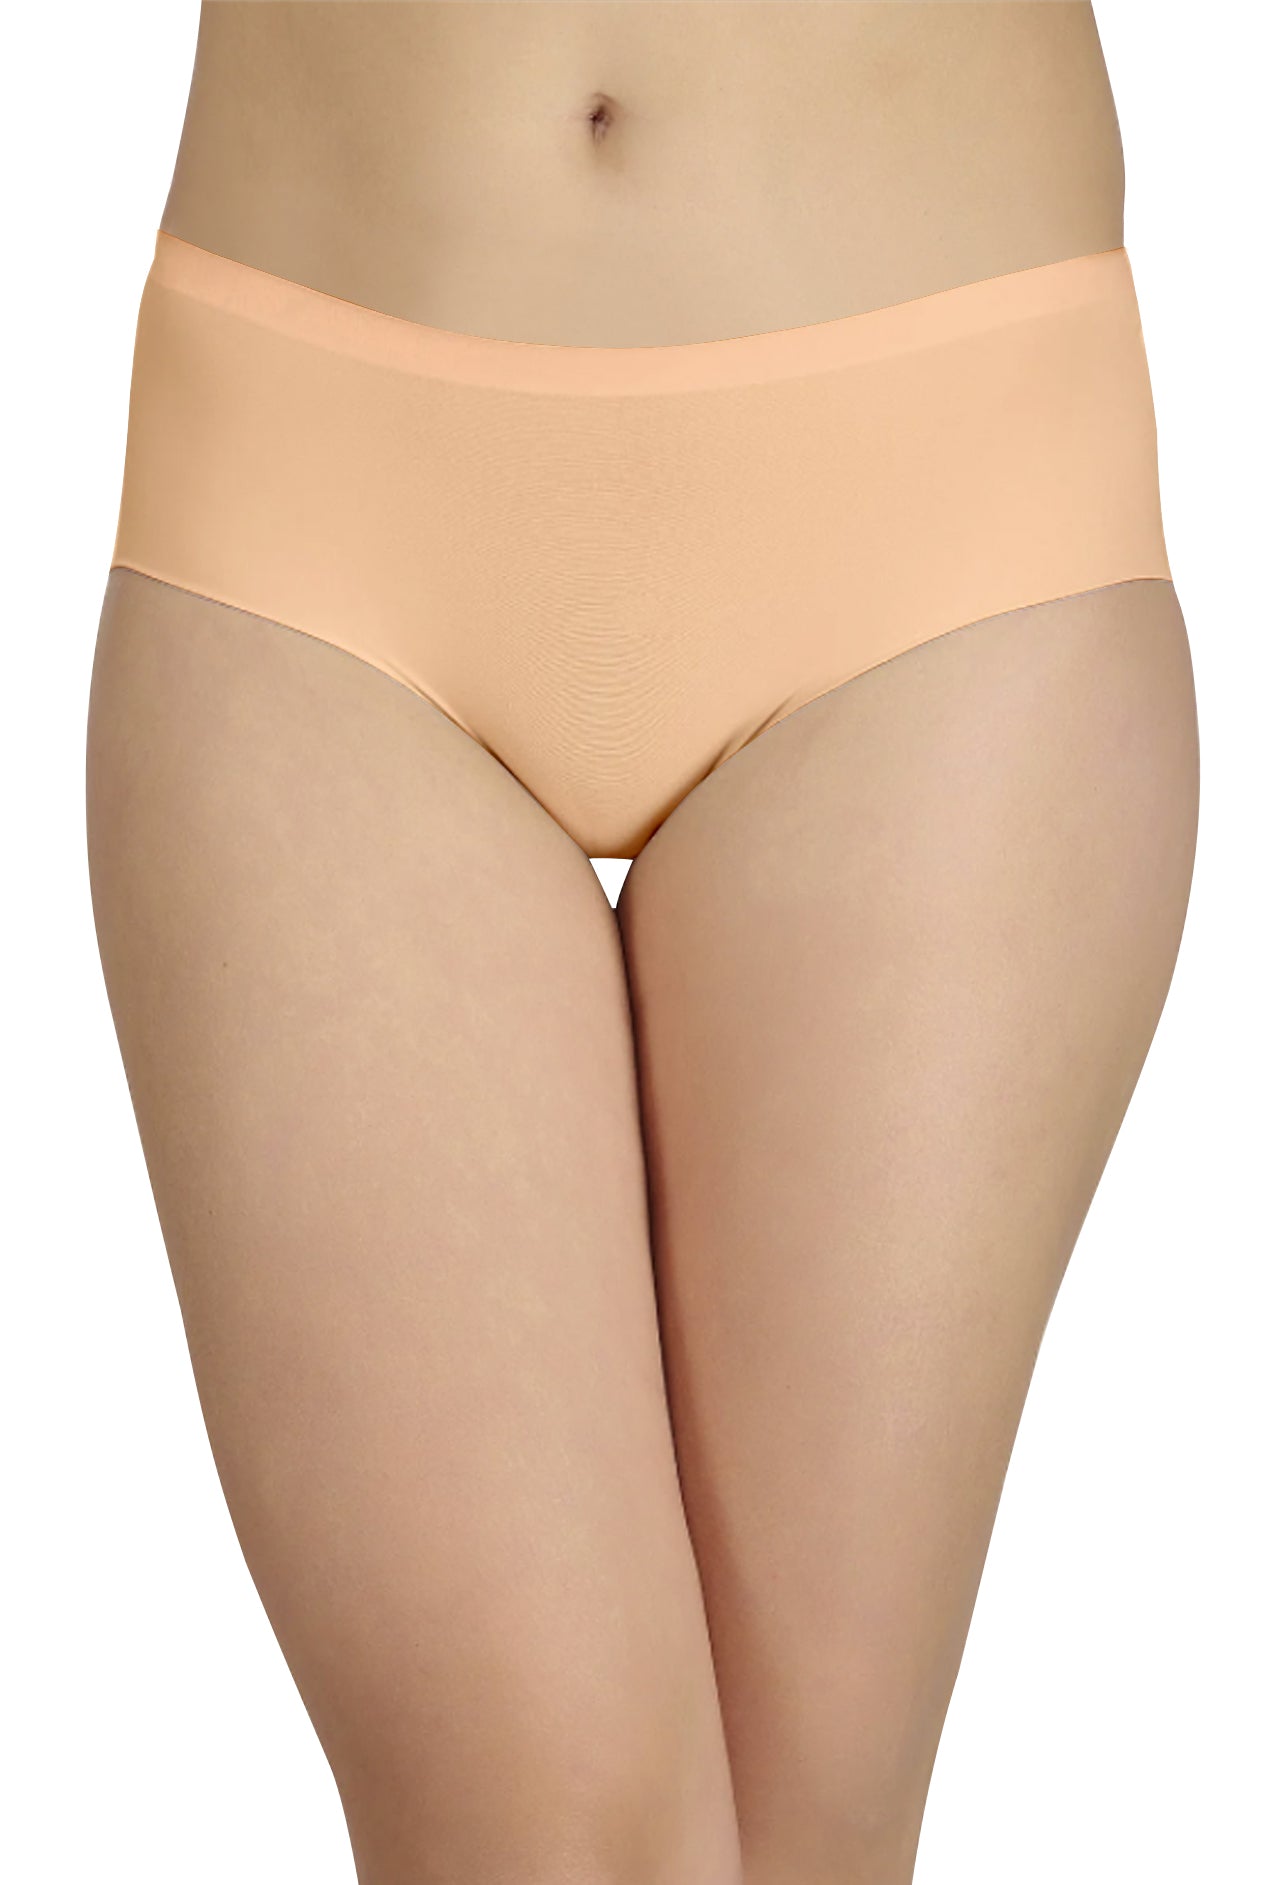 hiidubai.com - 5/- AED 1PC Seamless Slim Panty Product